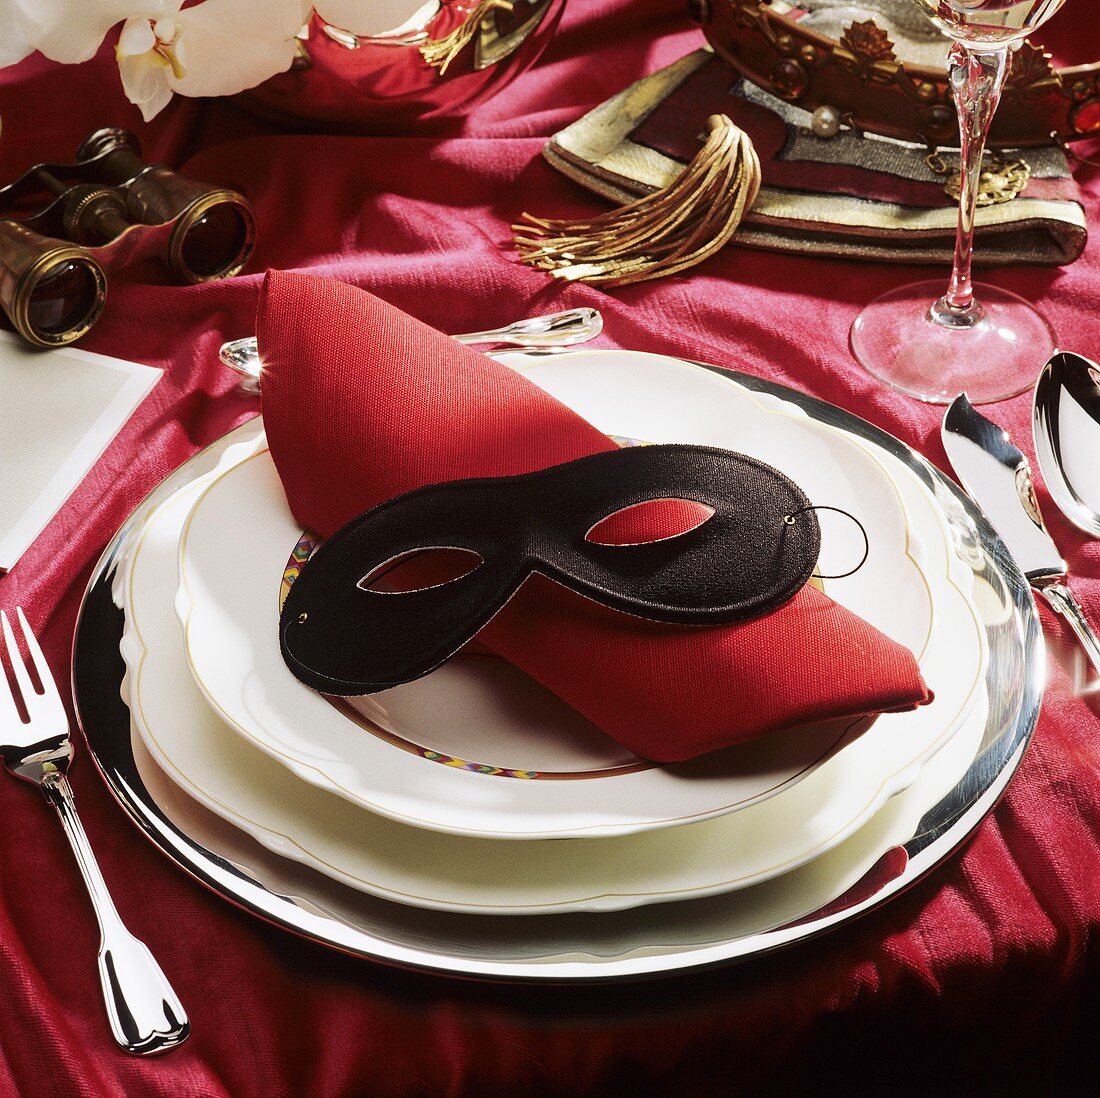 Festliches Gedeck mit roter Serviette & schwarzer Maske